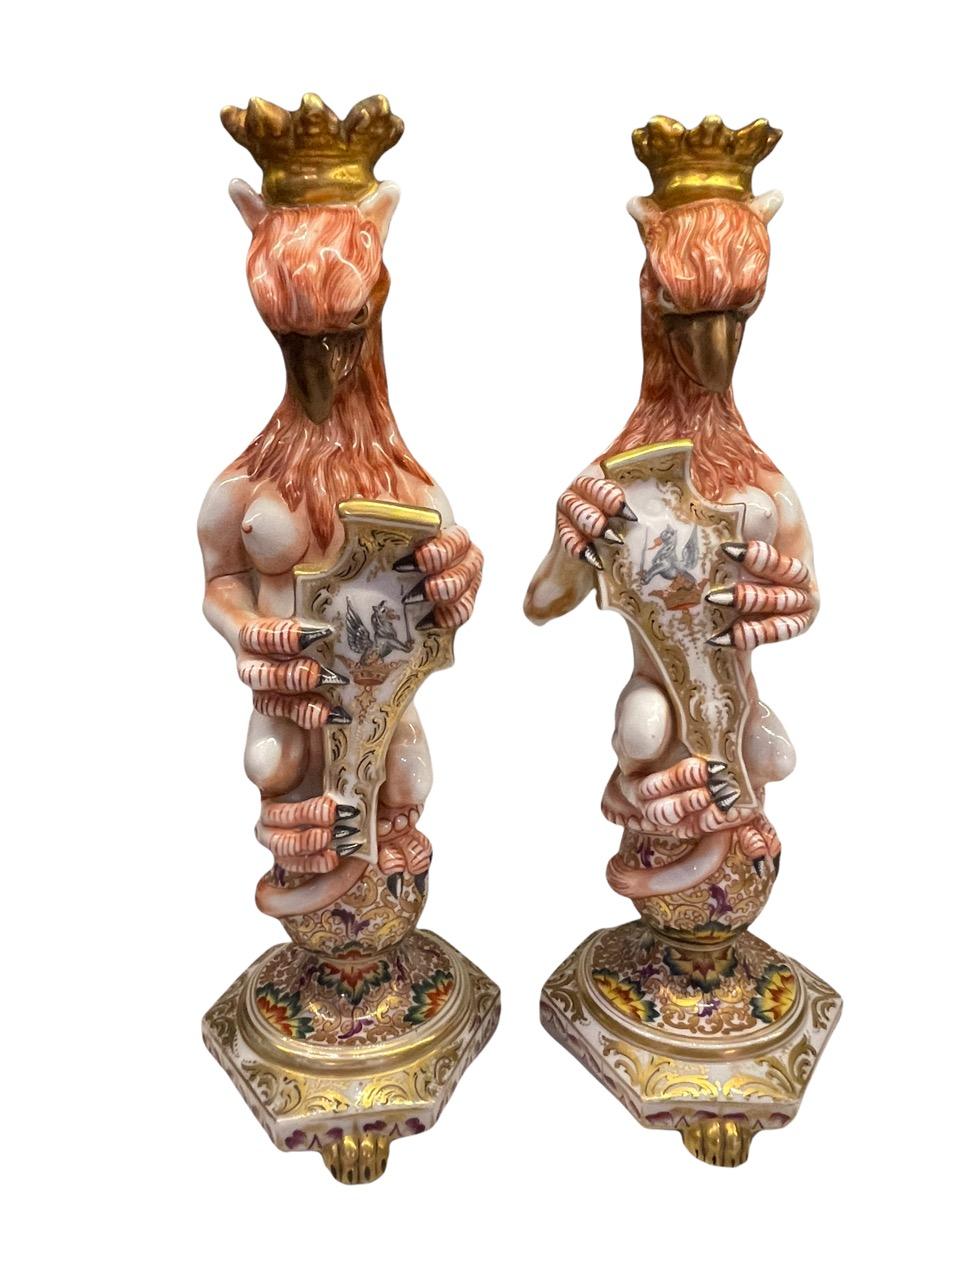 Capodimonte 19. Jahrhundert Italienisches Paar von gekrönten und geflügelten Greifenfiguren aus Majolika. Beide sind auf dem unteren Sockel mit der von 1771 bis 1834 verwendeten Signatur versehen. Jede von ihnen hält ein Schild mit gemalten